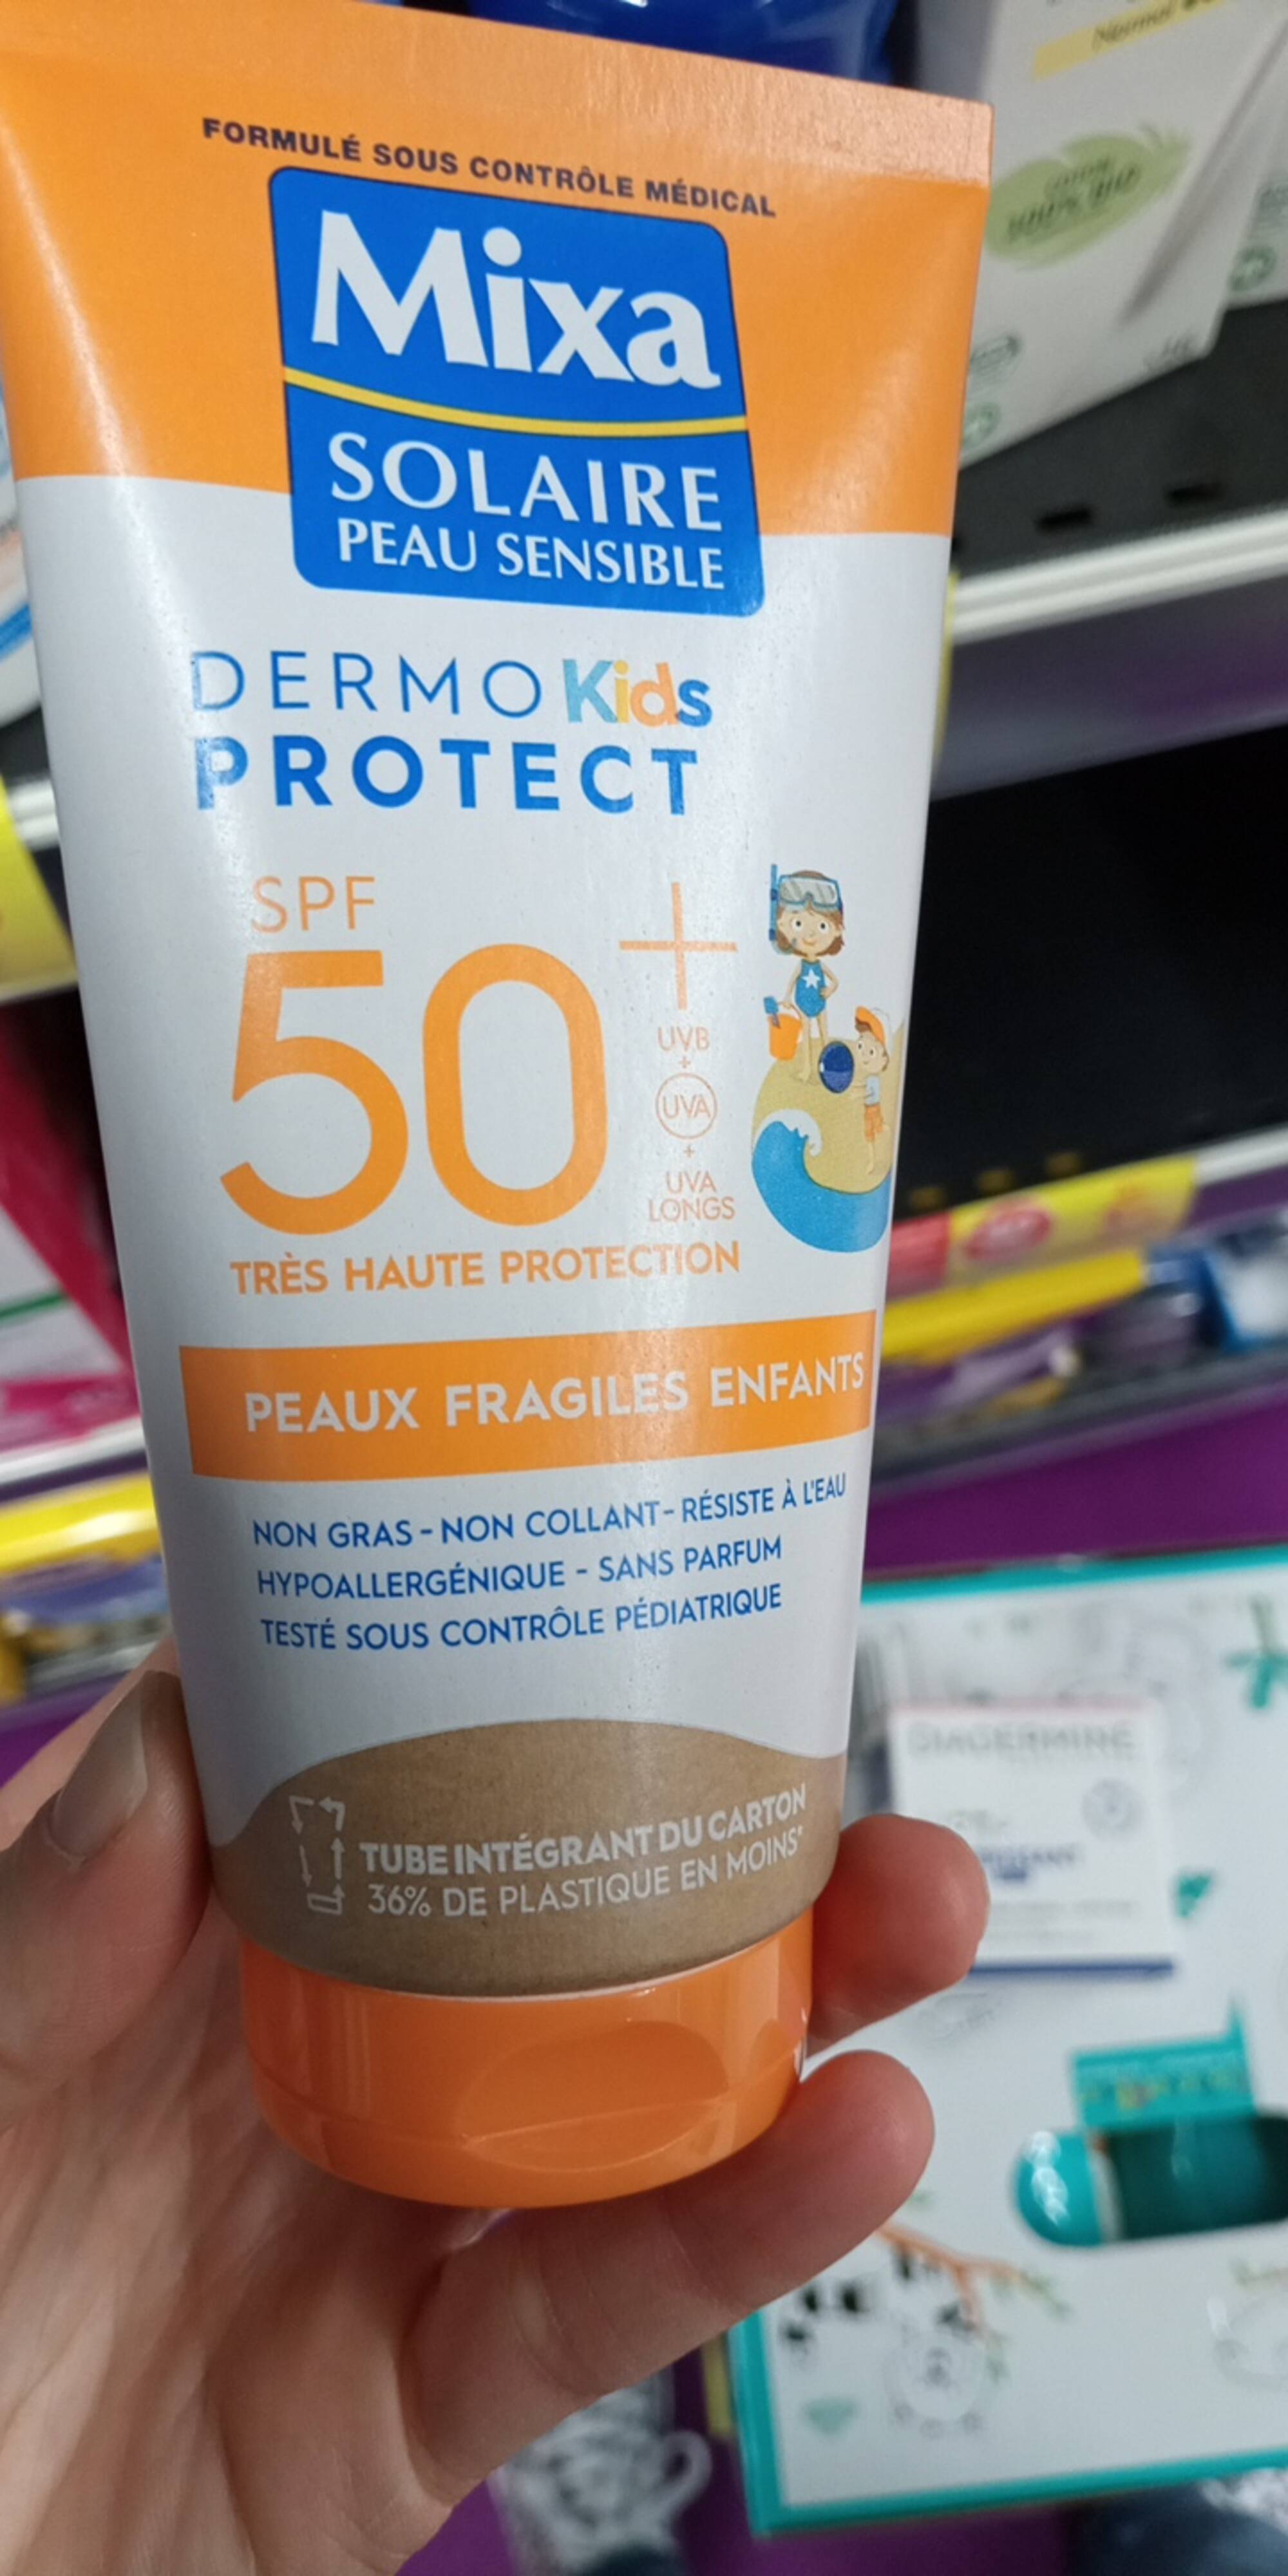 MIXA - Dermo kids protect SPF 50+